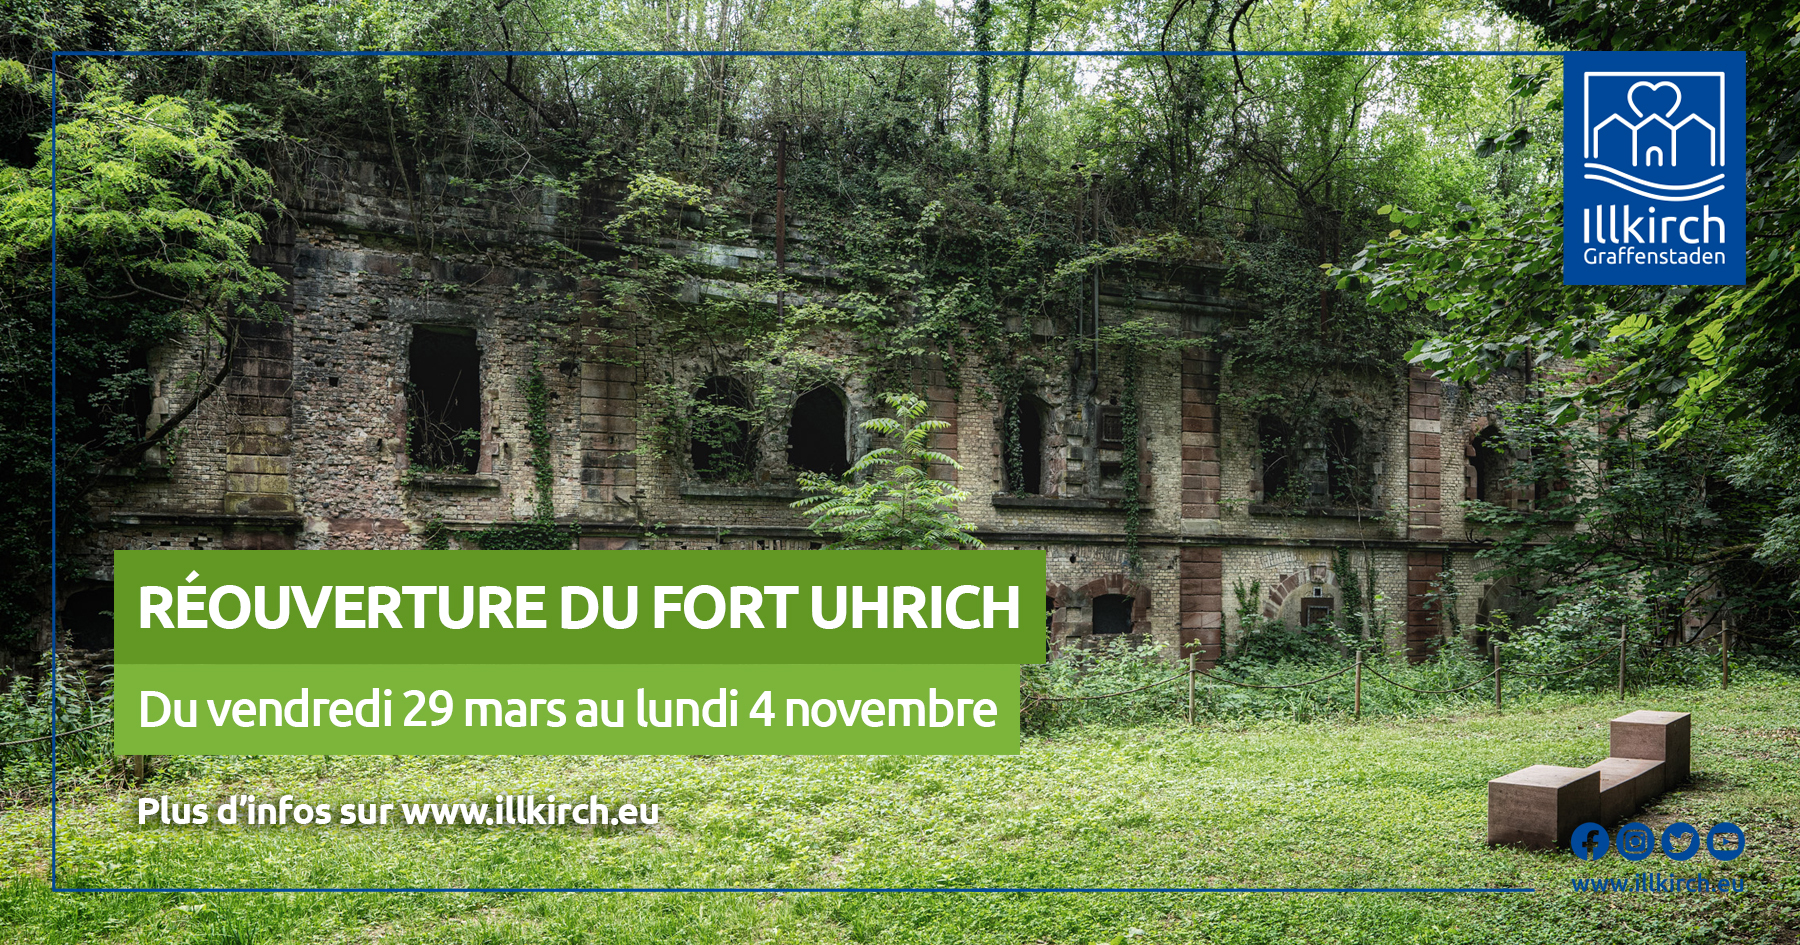 Le parc du fort Uhrich sera ouvert au public du vendredi 29 mars au lundi 4 novembre prochains.